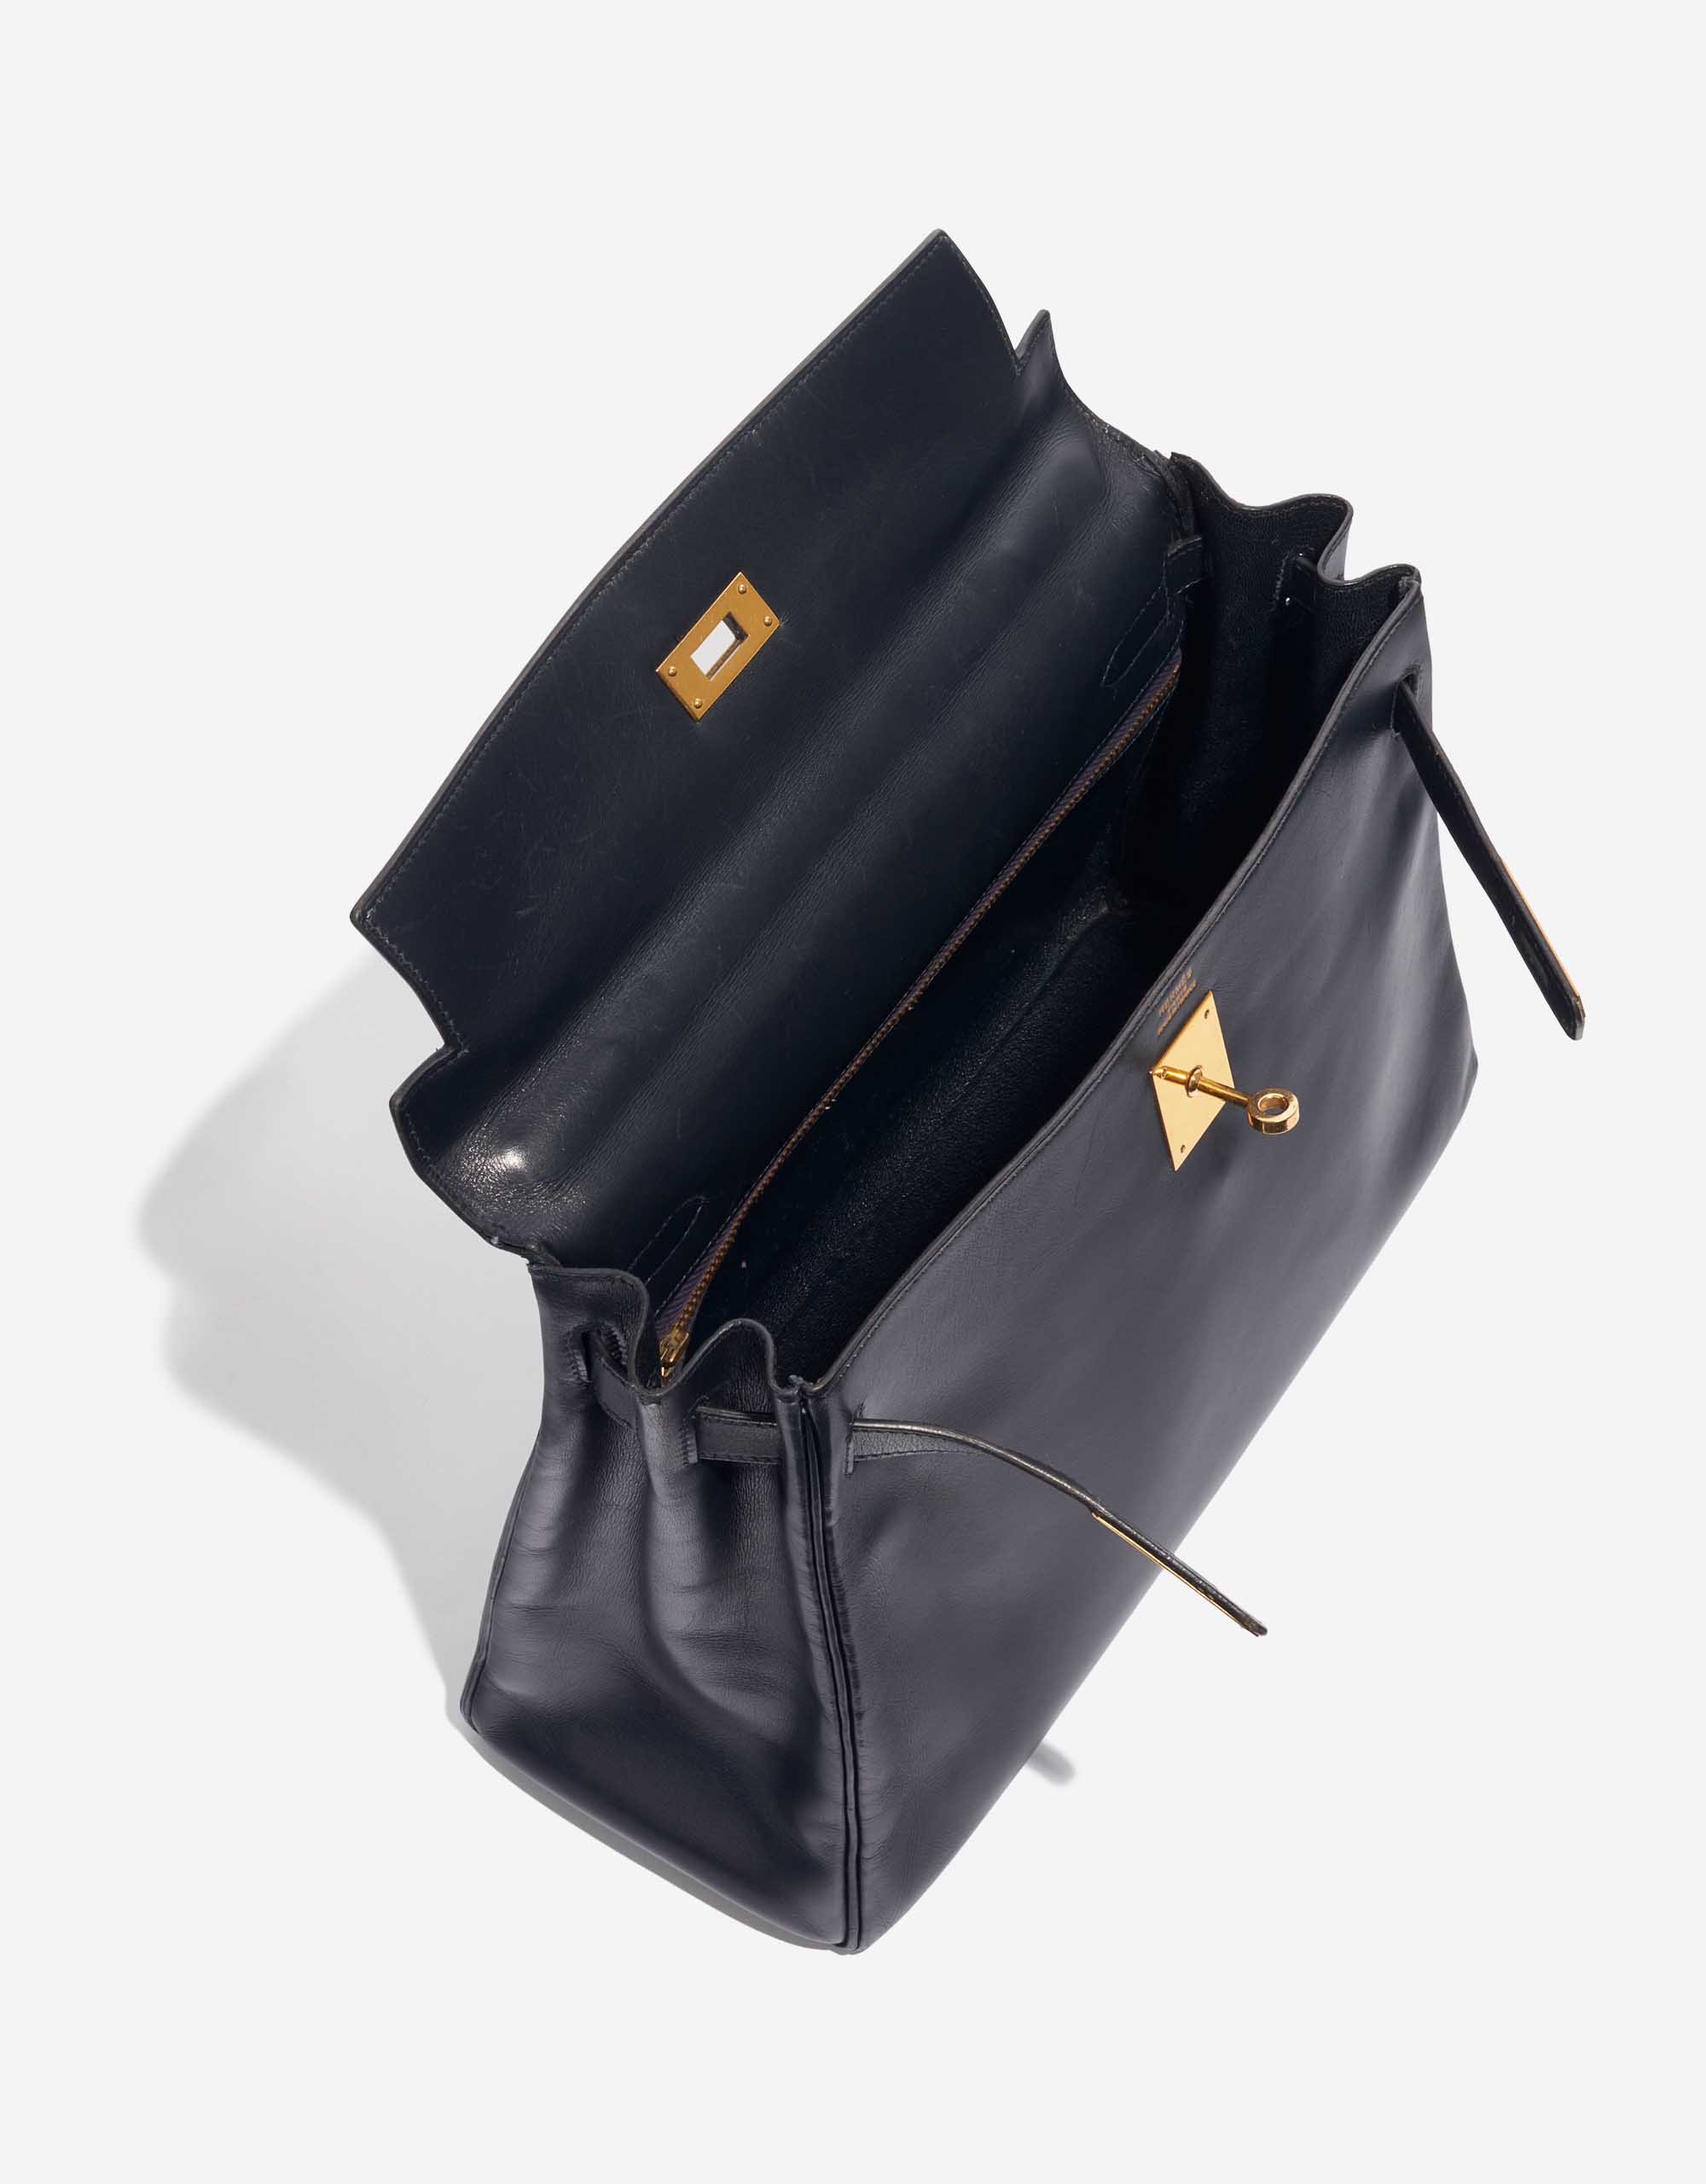 Pre-owned Hermès bag Kelly 32 Box Bleu Marine Blue Inside | Sell your designer bag on Saclab.com